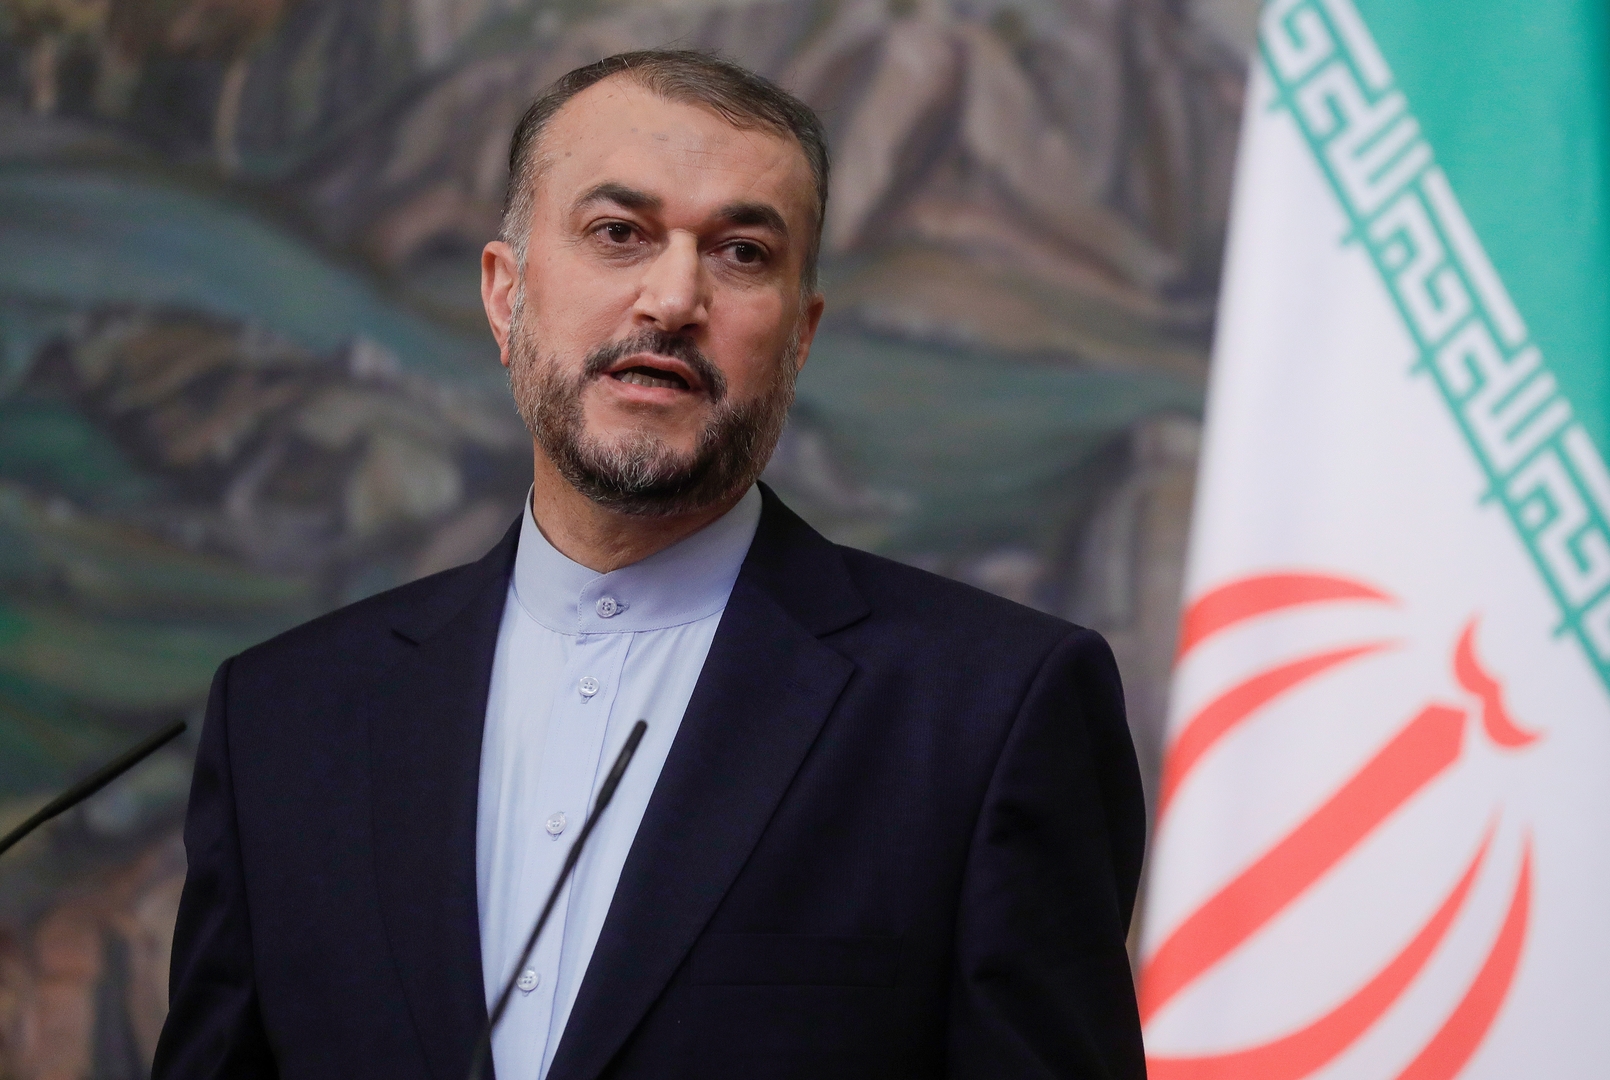 إيران: حوارنا مع السعودية يسير بالاتجاه الصحيح وتوصلنا إلى اتفاقات معينة